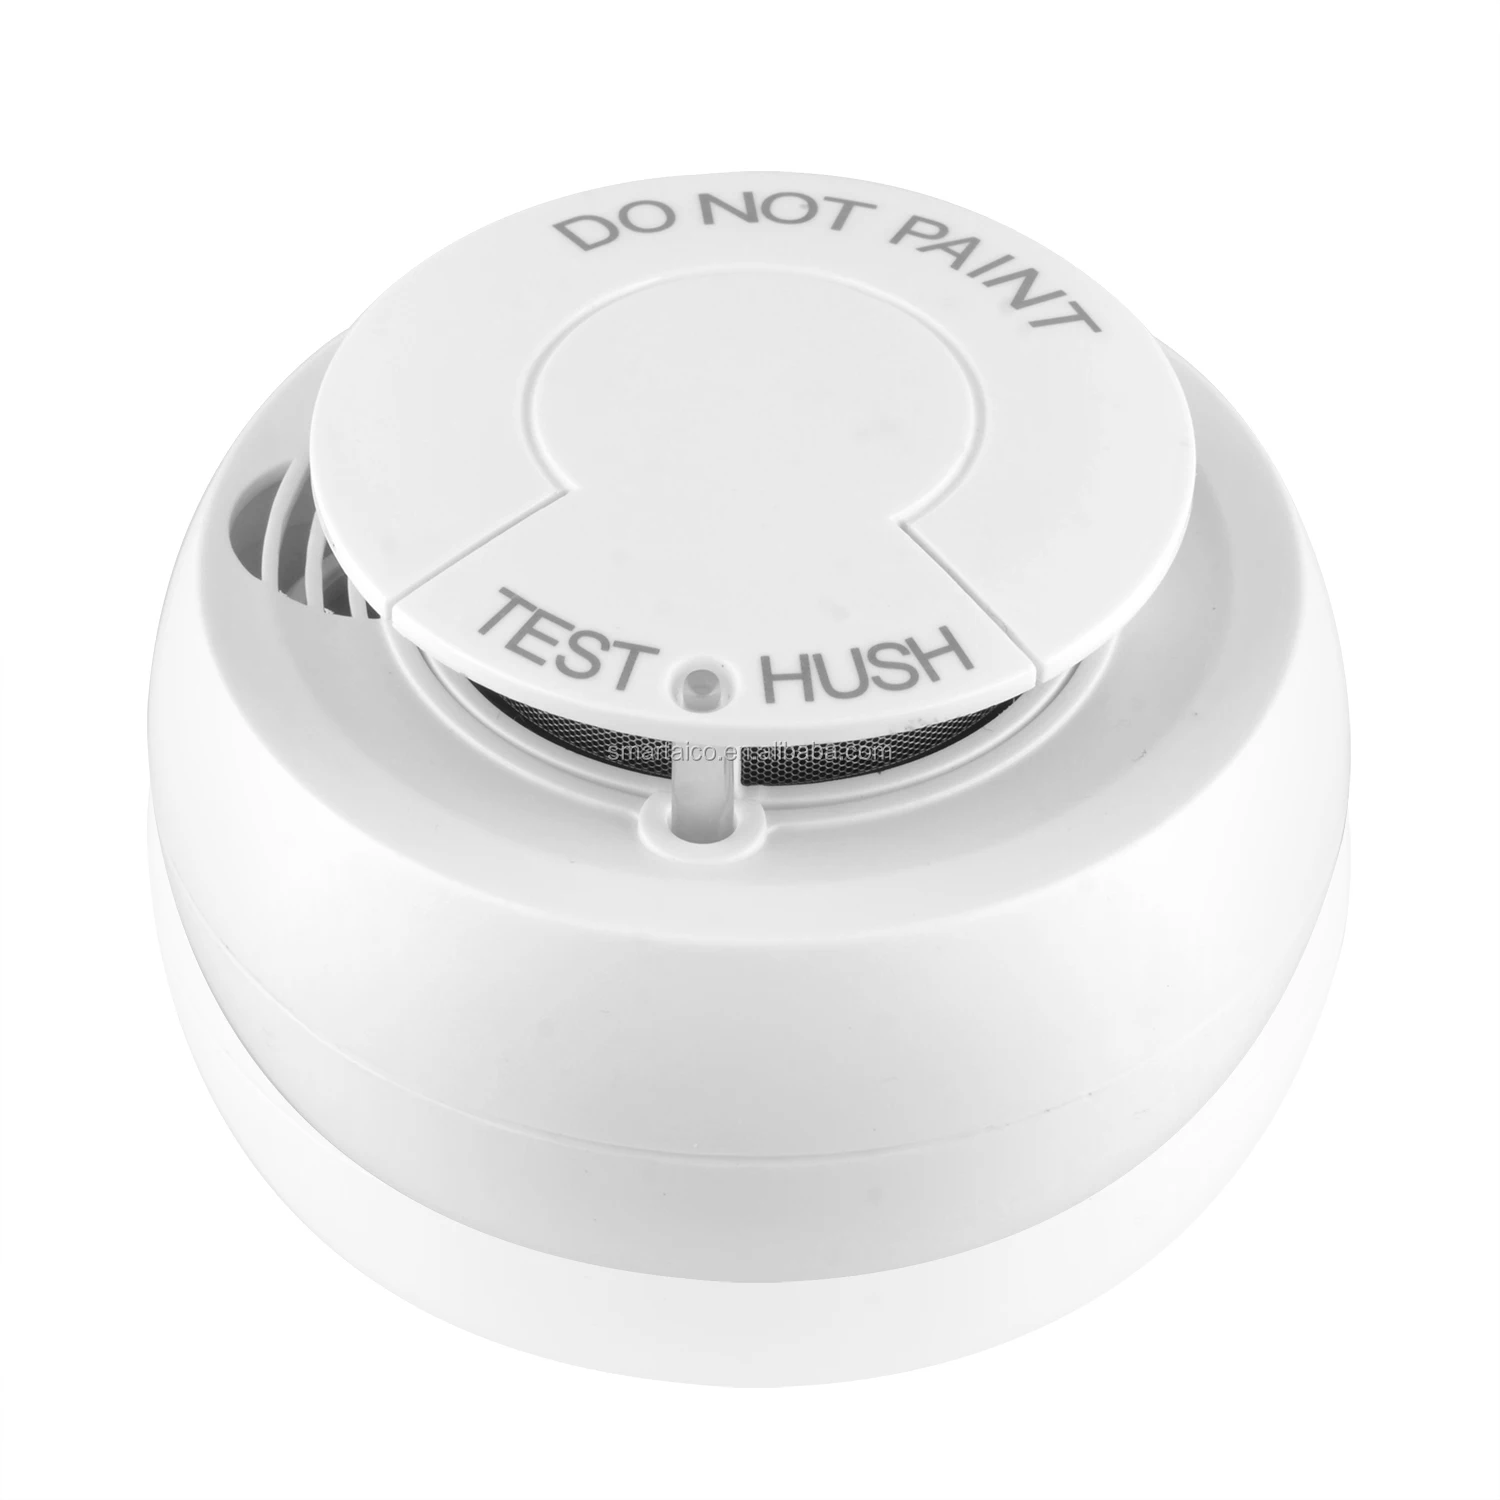 Hl Smoke sensor-01-WIFI беспроводной датчик дыма. Tuya WIFI Smoke Detector. Противопожарный датчик на батарейках. Пожарные датчики дымовые беспроводные автономные купить.